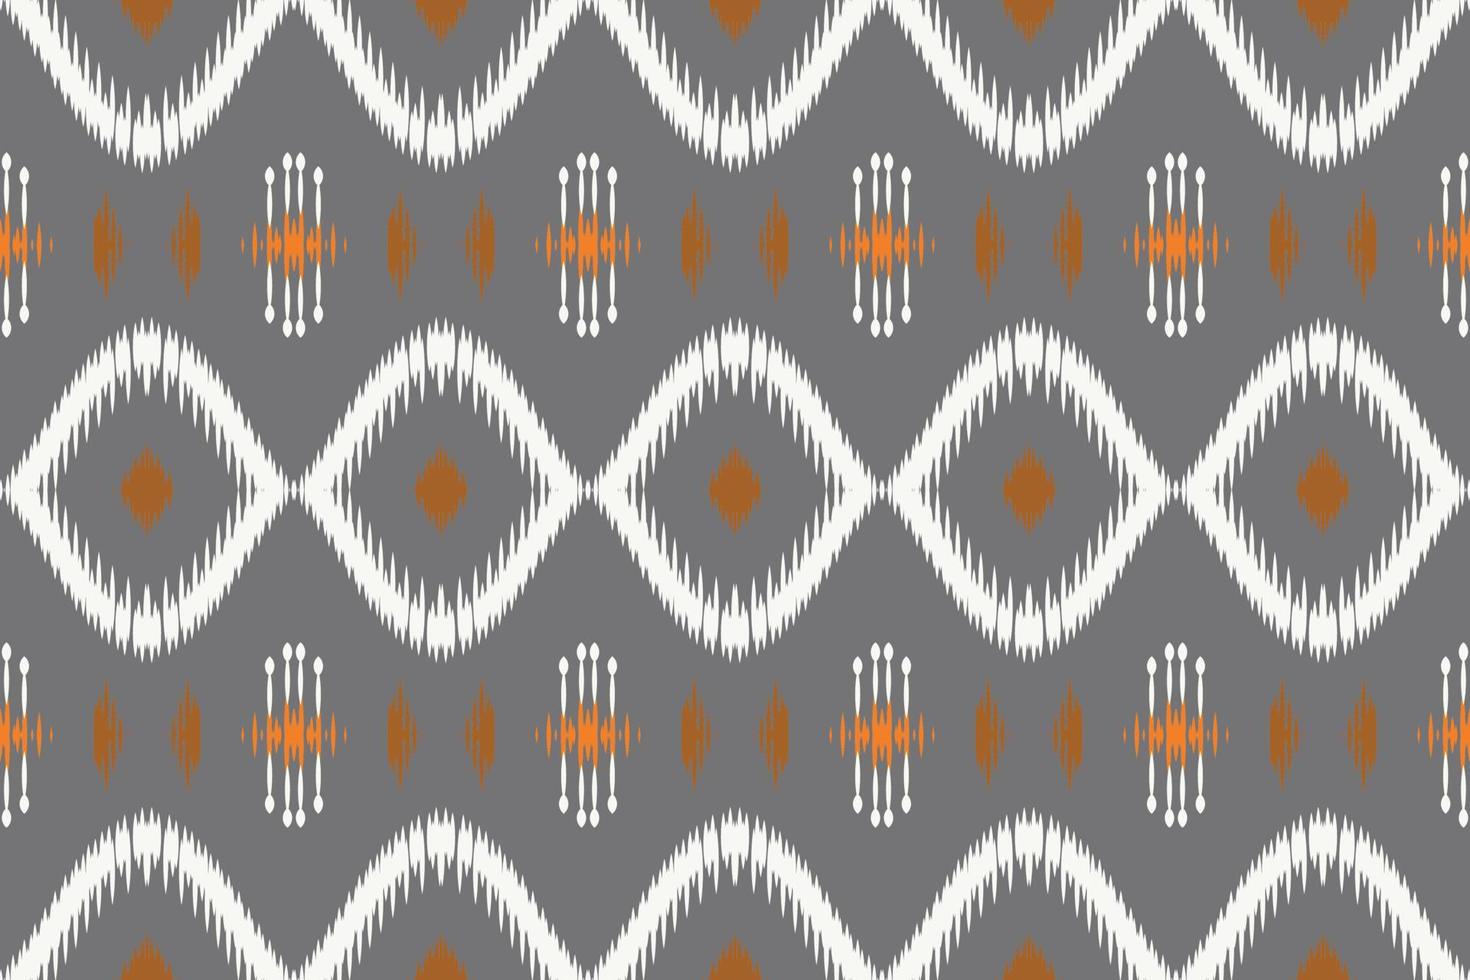 filippina ikat design tribale colore Borneo scandinavo batik boemo struttura digitale vettore design per Stampa saree Kurti tessuto spazzola simboli campioni